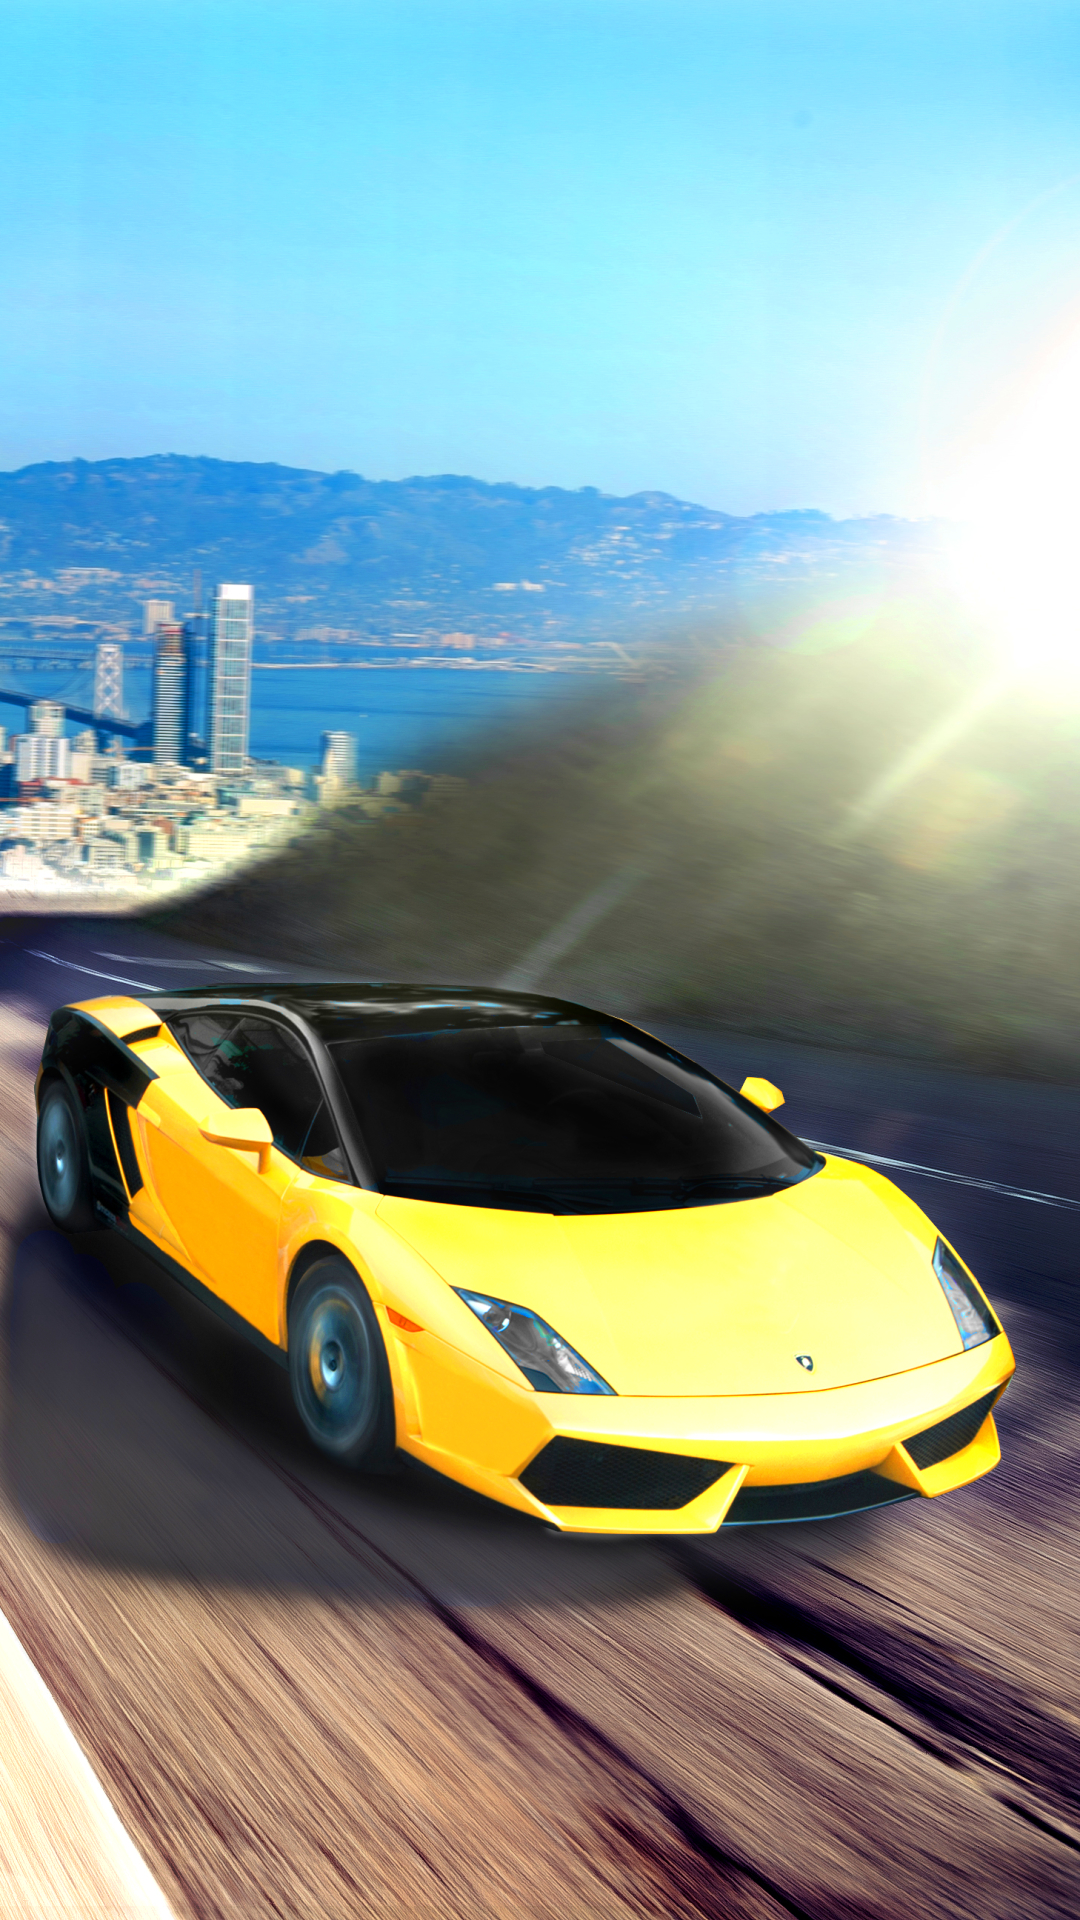 Descarga gratuita de fondo de pantalla para móvil de Lamborghini, Coche, San Francisco, Superdeportivo, Lamborghini Gallardo, Vehículo, Vehículos, Coche Amarillo.